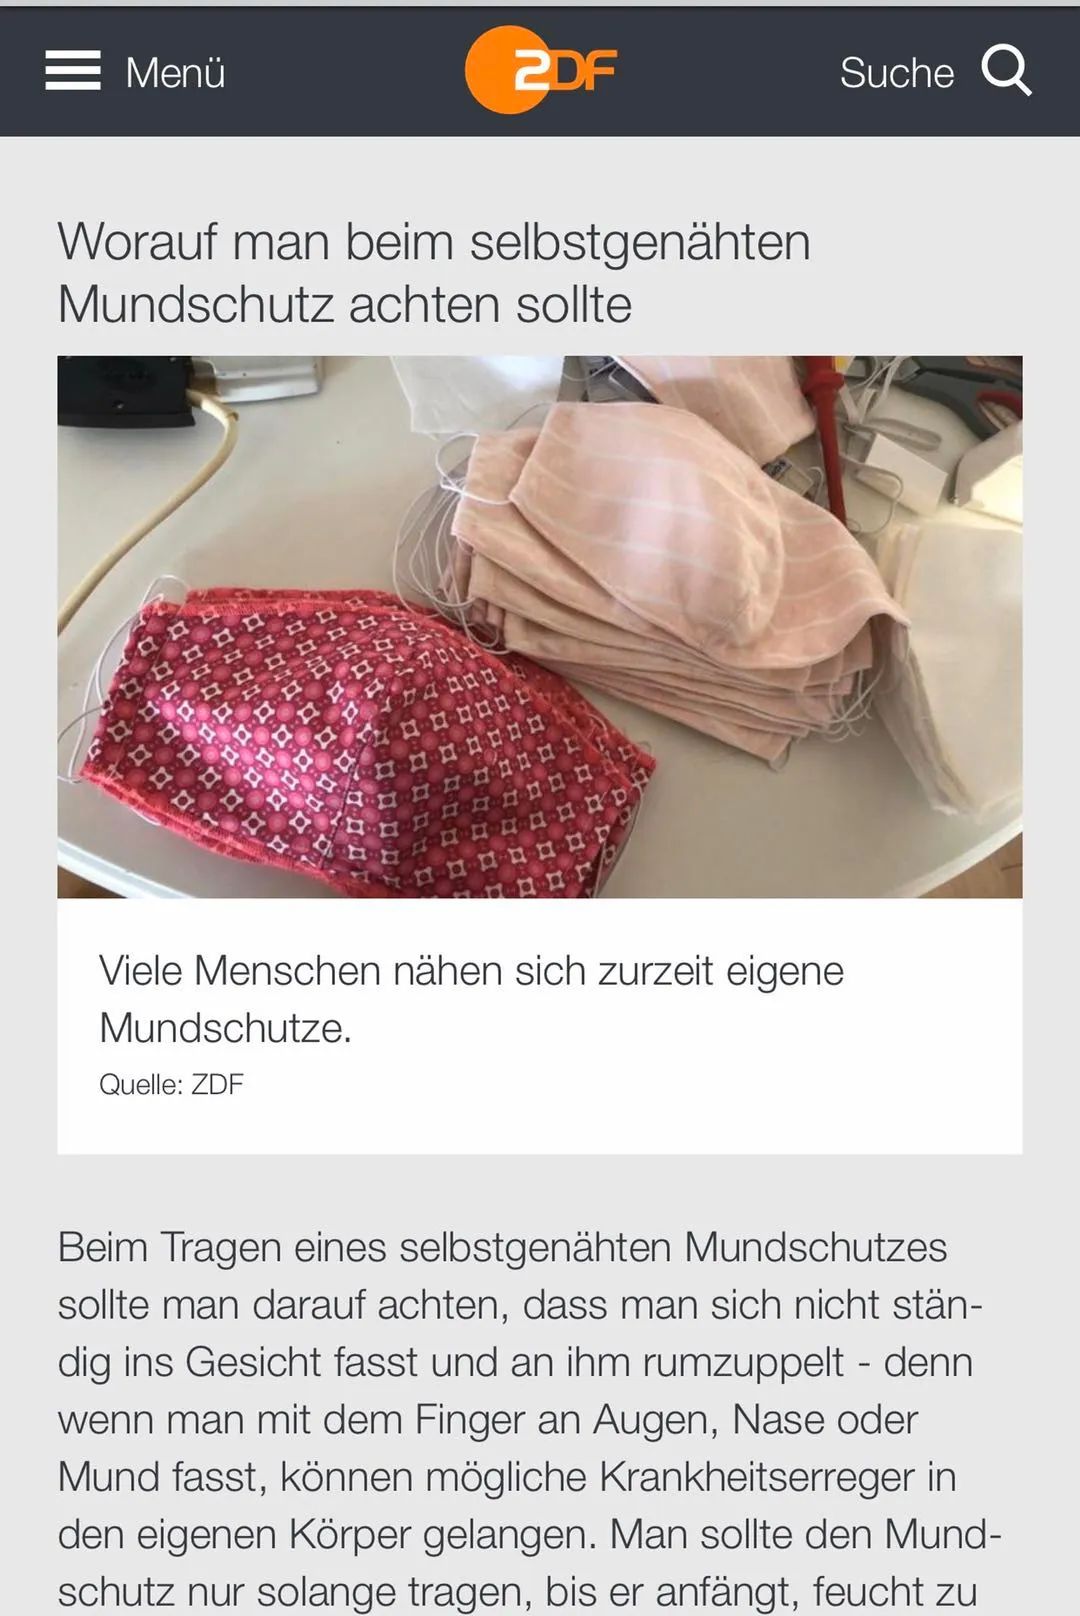 △德国电视二台对很多民众自己动手缝口罩进行报道